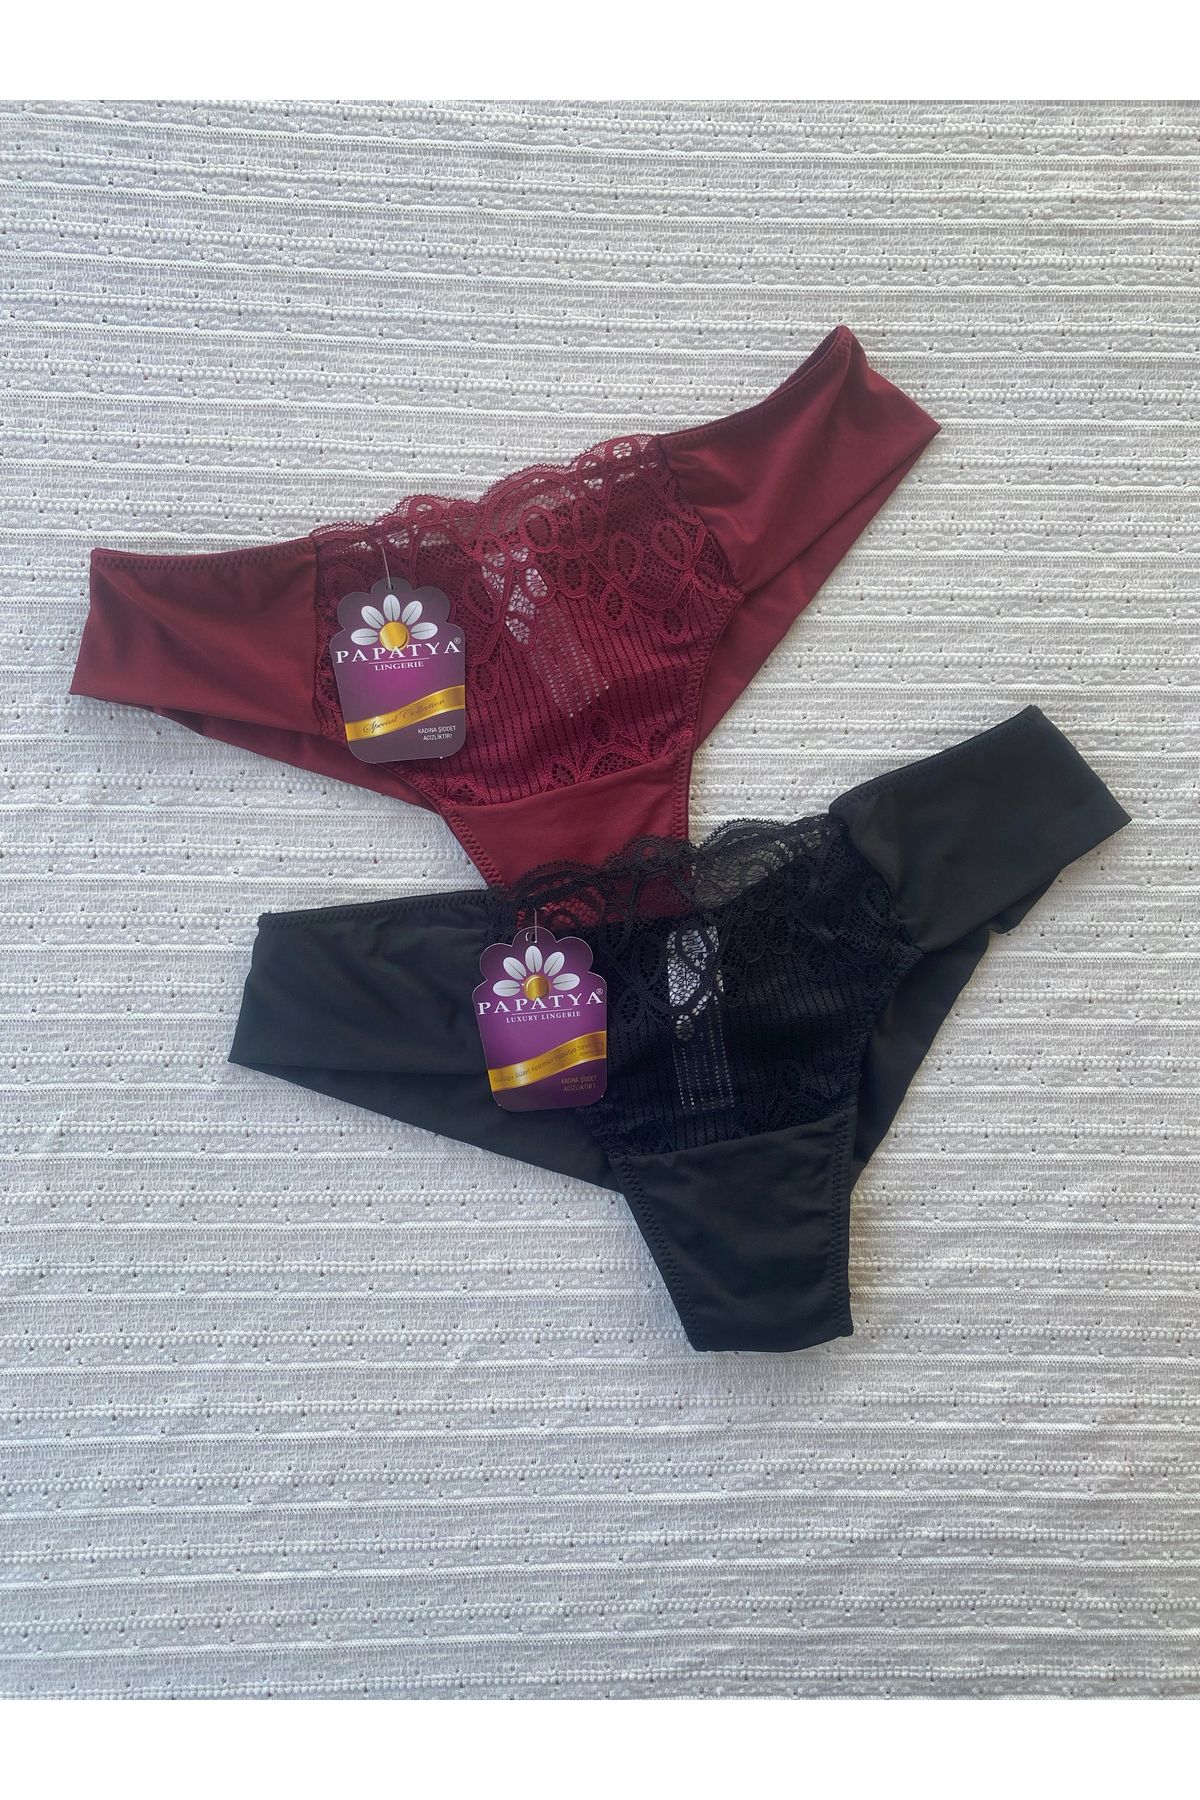 papatya lingerie Ön Dantel Detaylı Mikro Kumaş Külot 3lü Paket